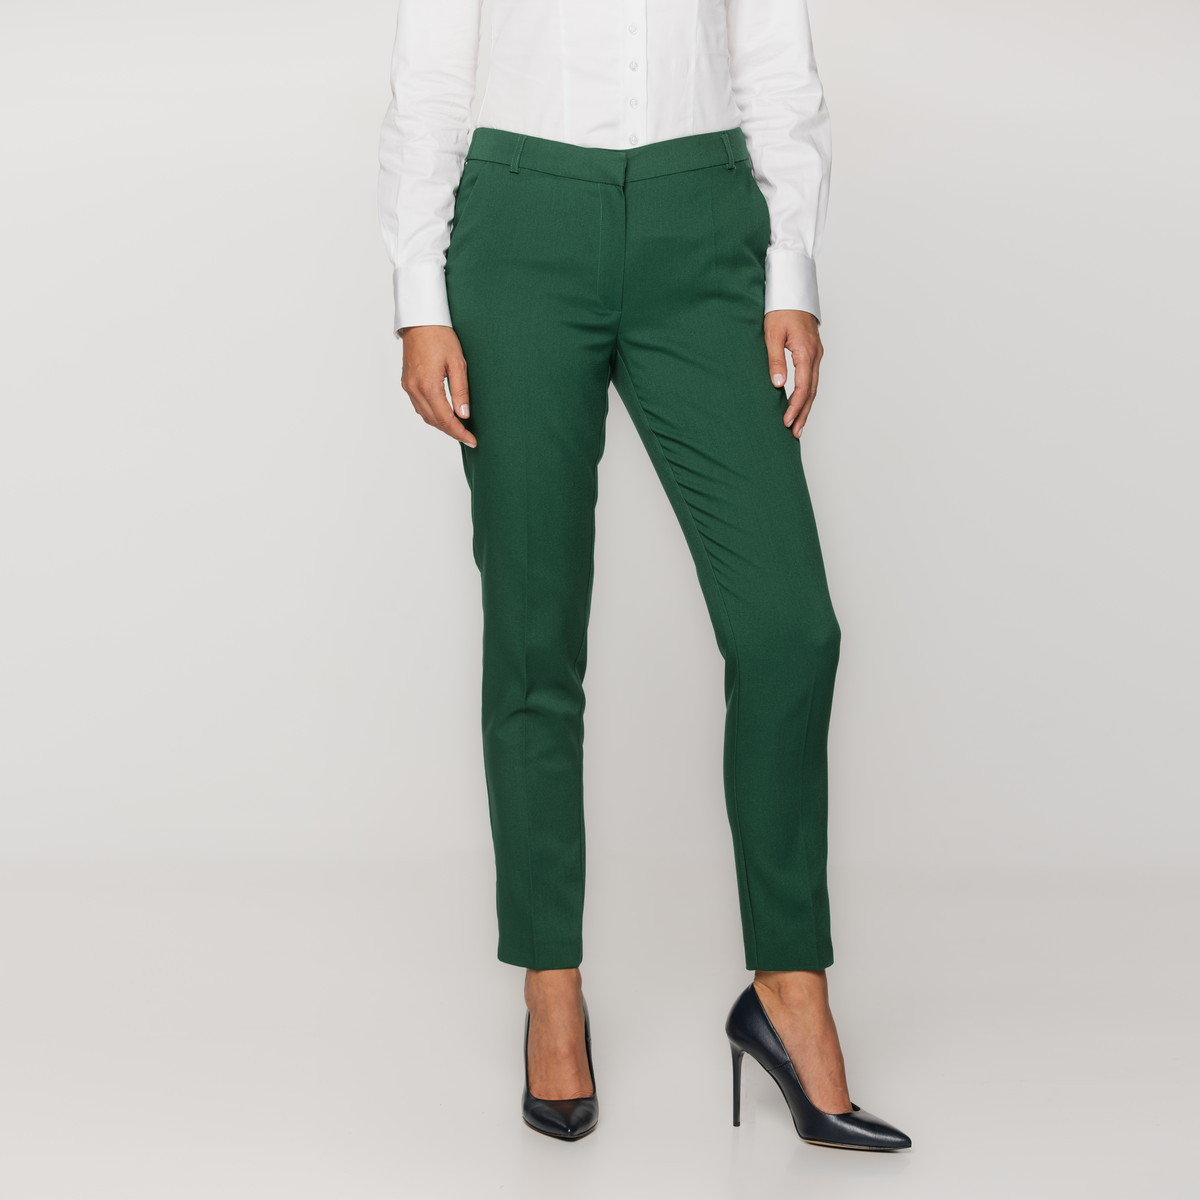 Zielone spodnie garniturowe typu long size